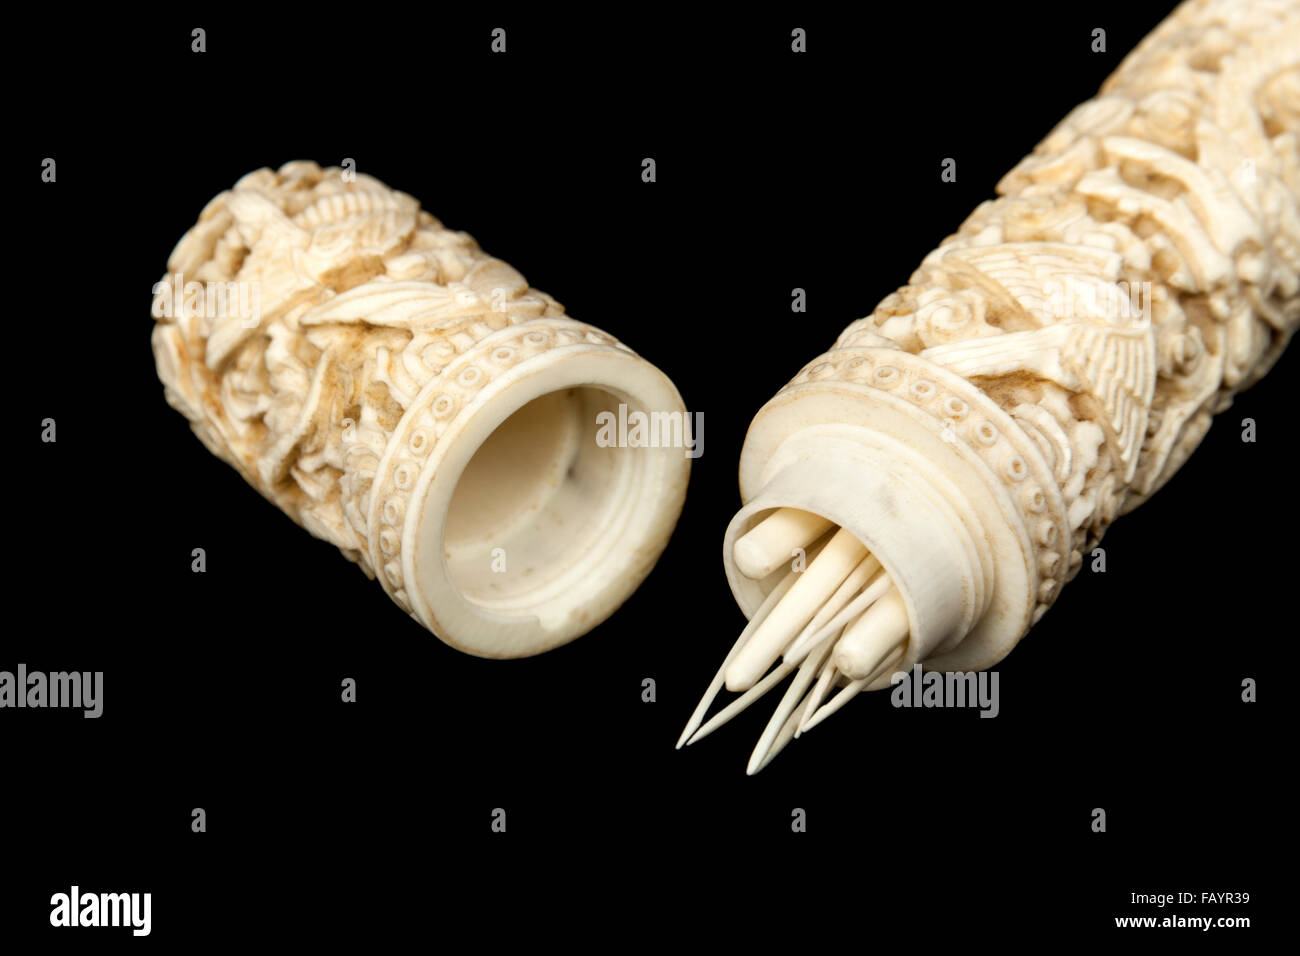 Seltene 19. Jahrhundert geschnitzt antiken chinesischen Elfenbein Nadel Gehäuse und Abdeckung mit einer Auswahl von geschnitztem Elfenbein Nähen implementiert Stockfoto